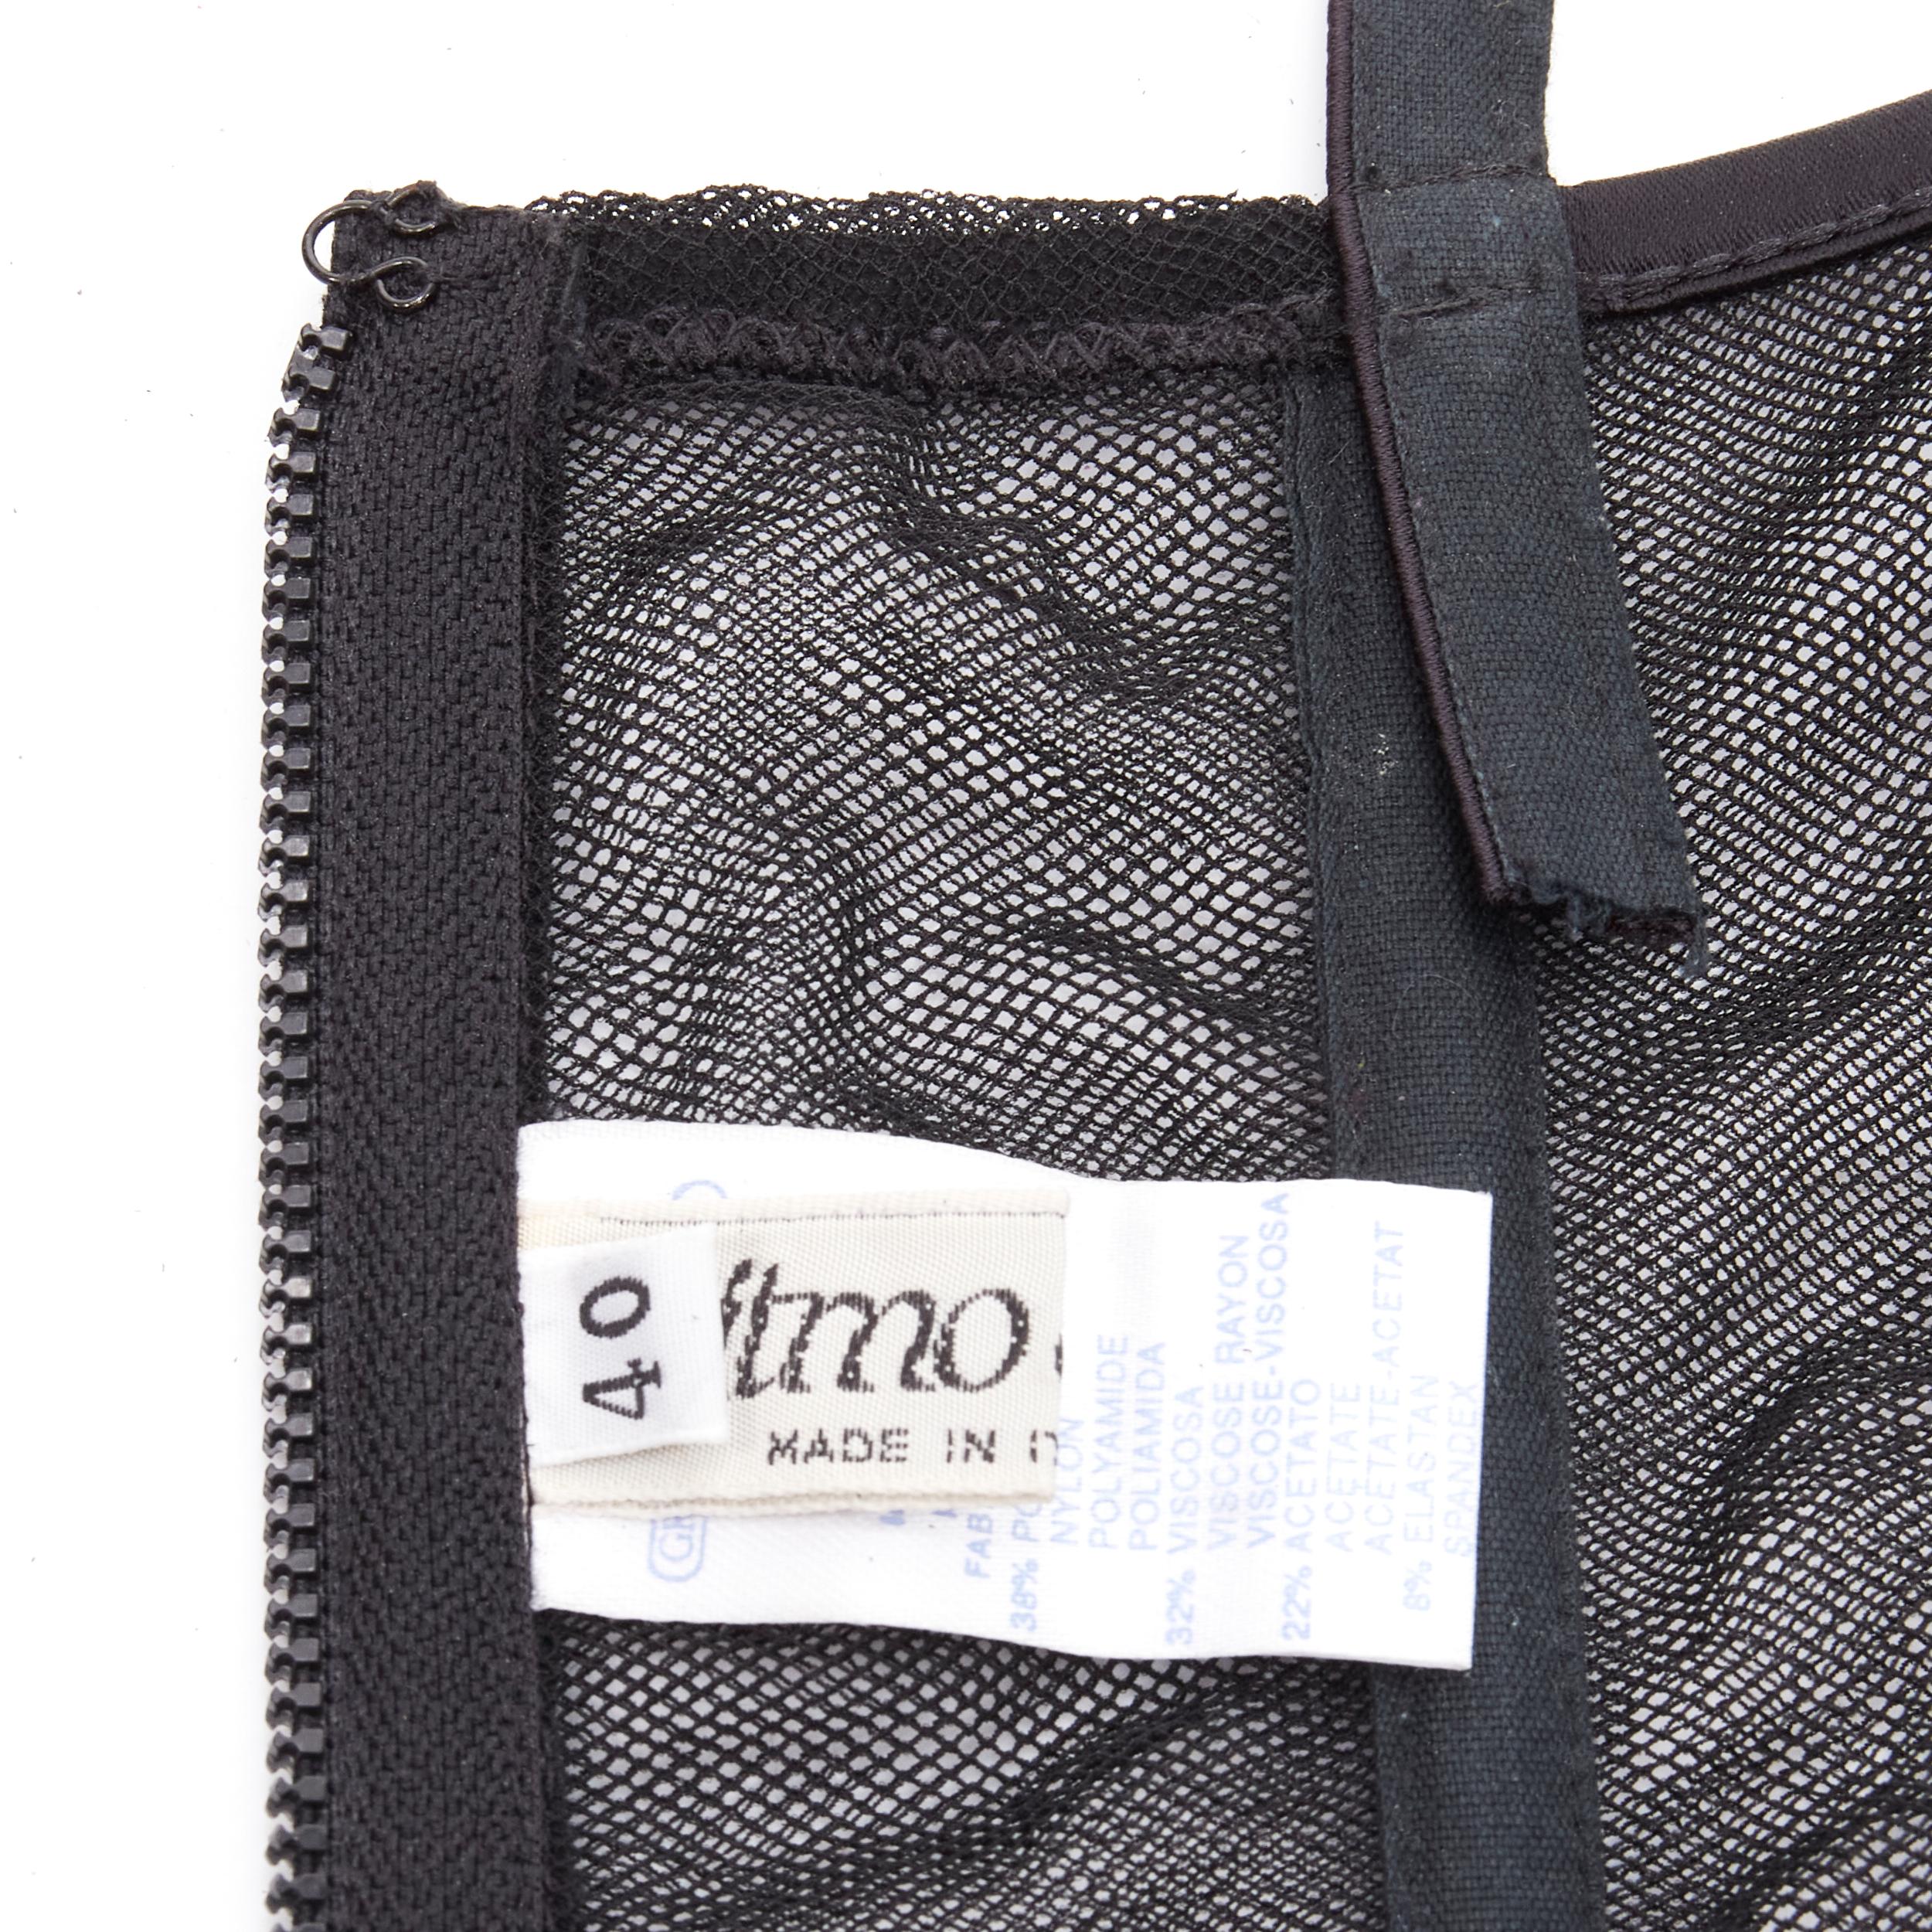 RITMO DI PERLA LA PERLA Vintage black embroidery boned corset top IT40 S 1